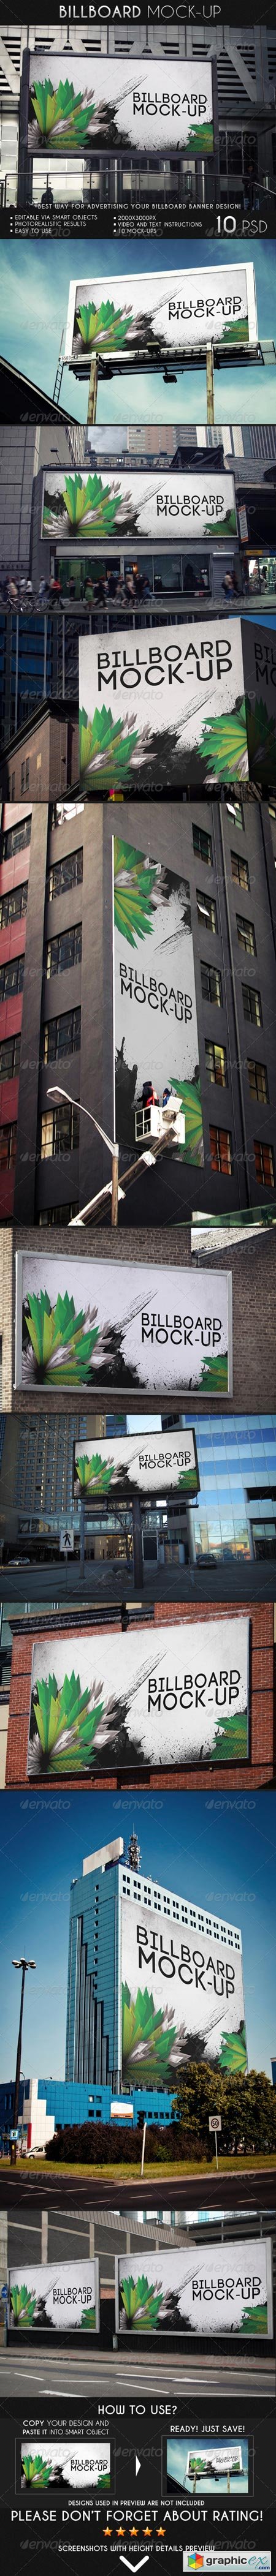 Billboard Mock-Up 6993838